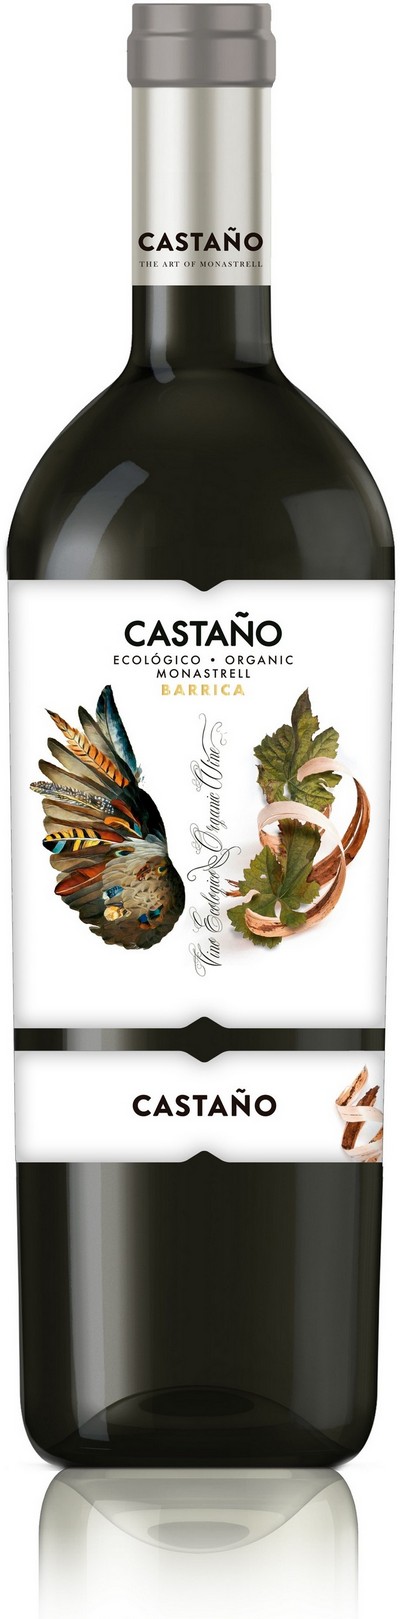 castano-ecologico-monastrell-barrica-2019